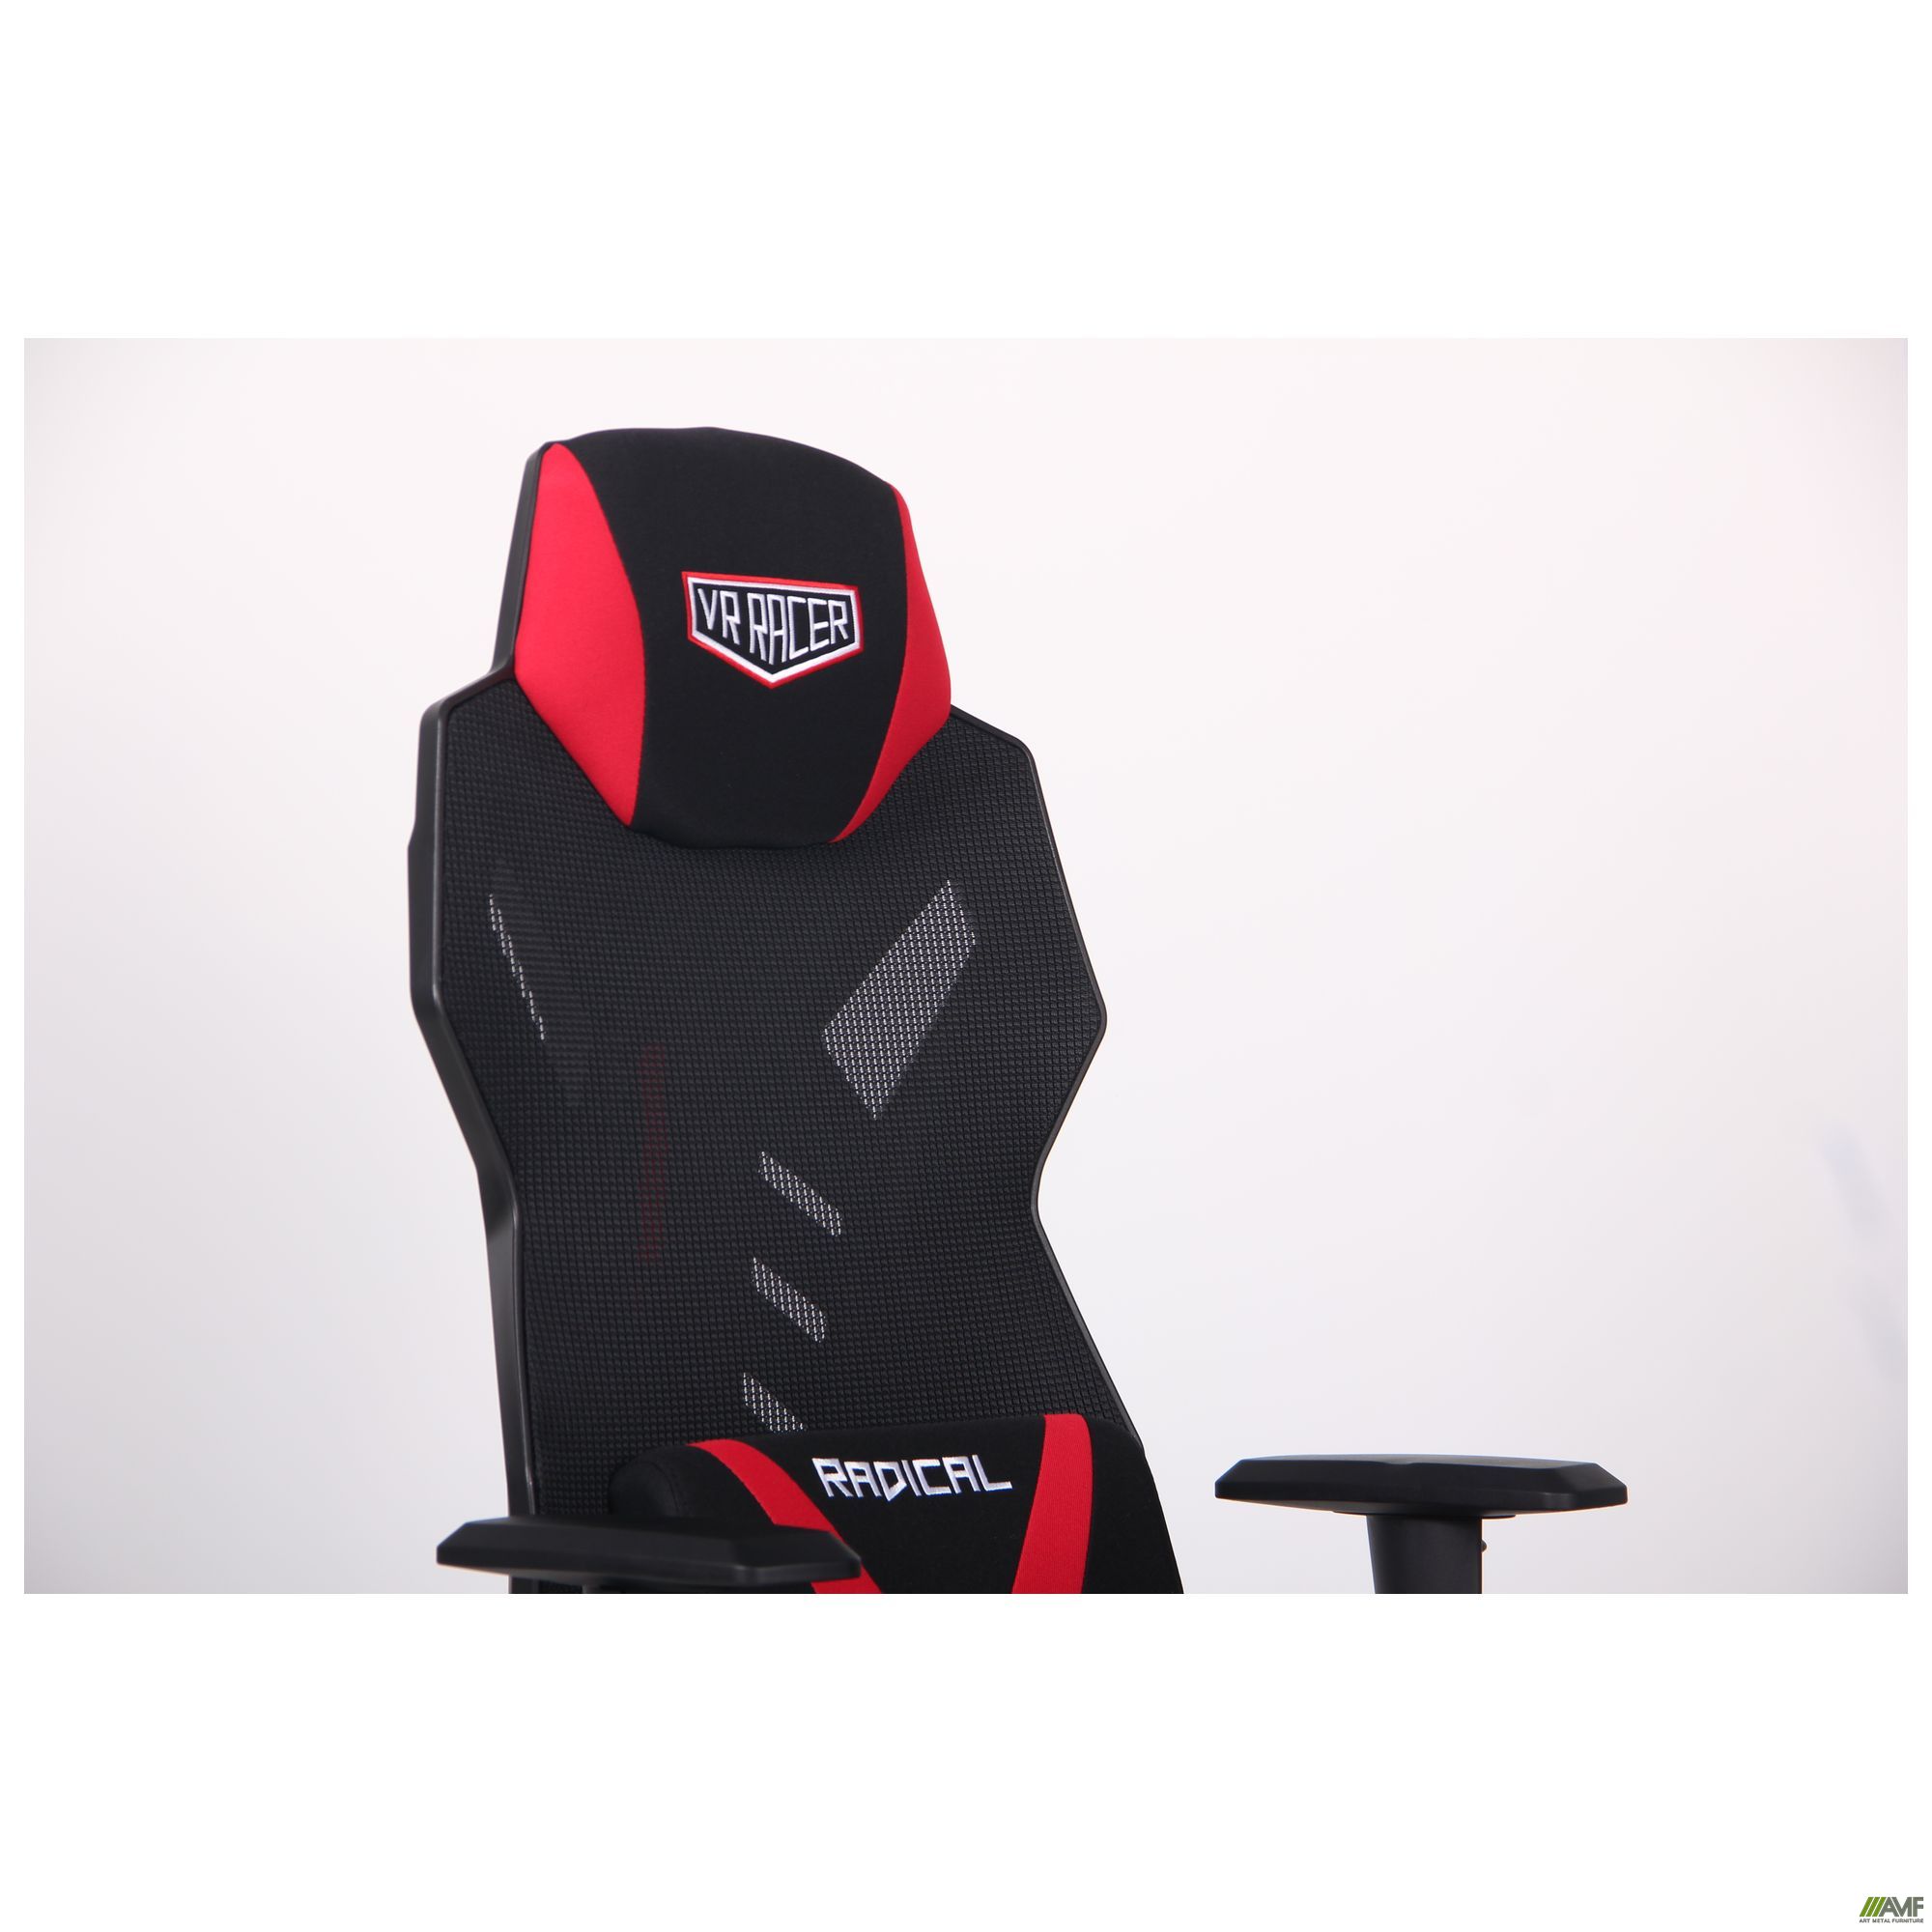 Фото 8 - Кресло VR Racer Radical Grunt черный/красный 